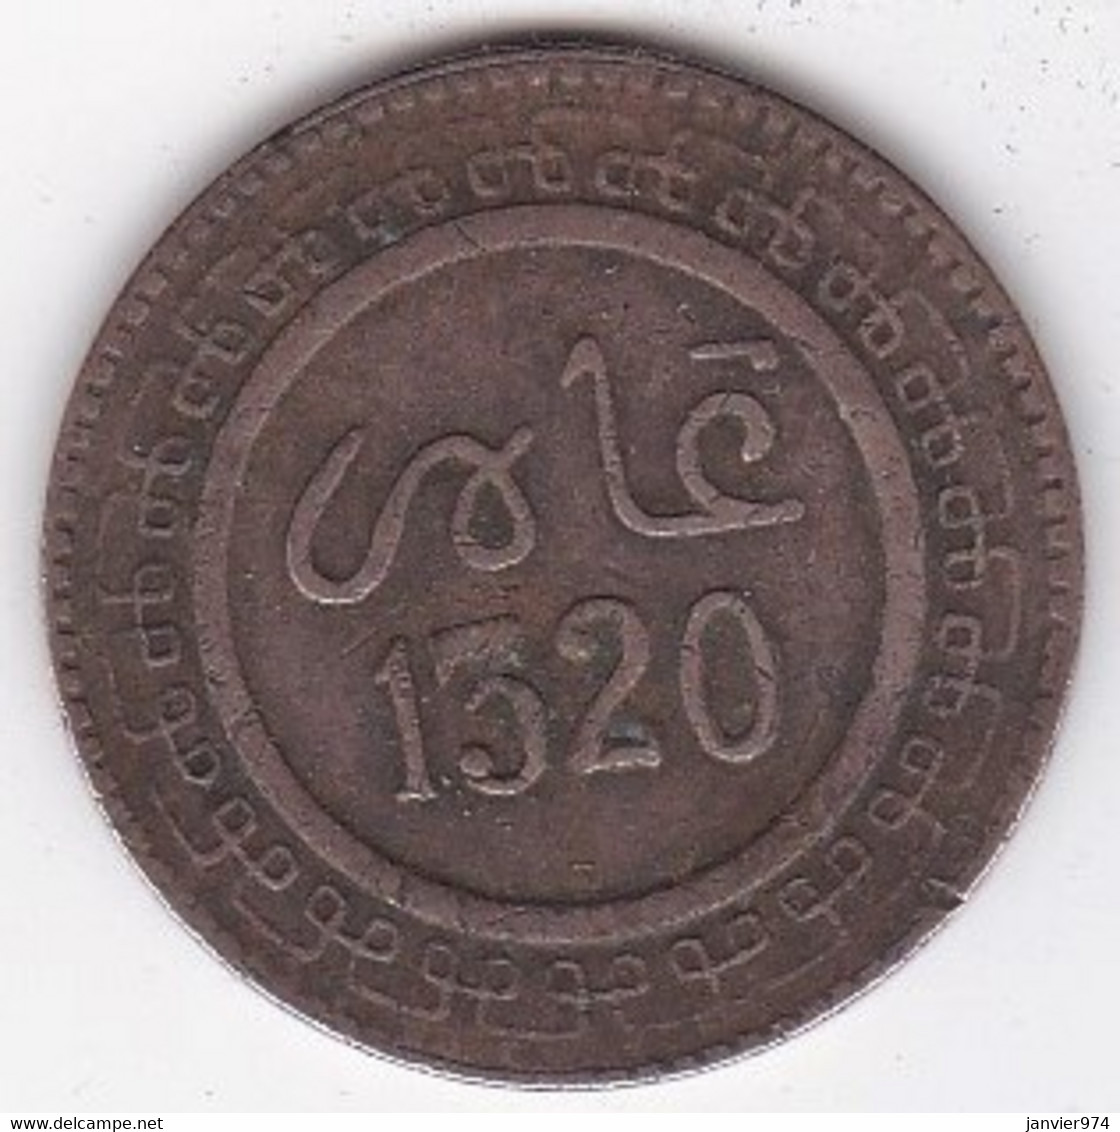 Protectorat Français. 5 Mazunas (Mouzounas) HA 1320 - 1902 FEZ. Frappe Médaille. Bronze, Lec# 57 - Morocco